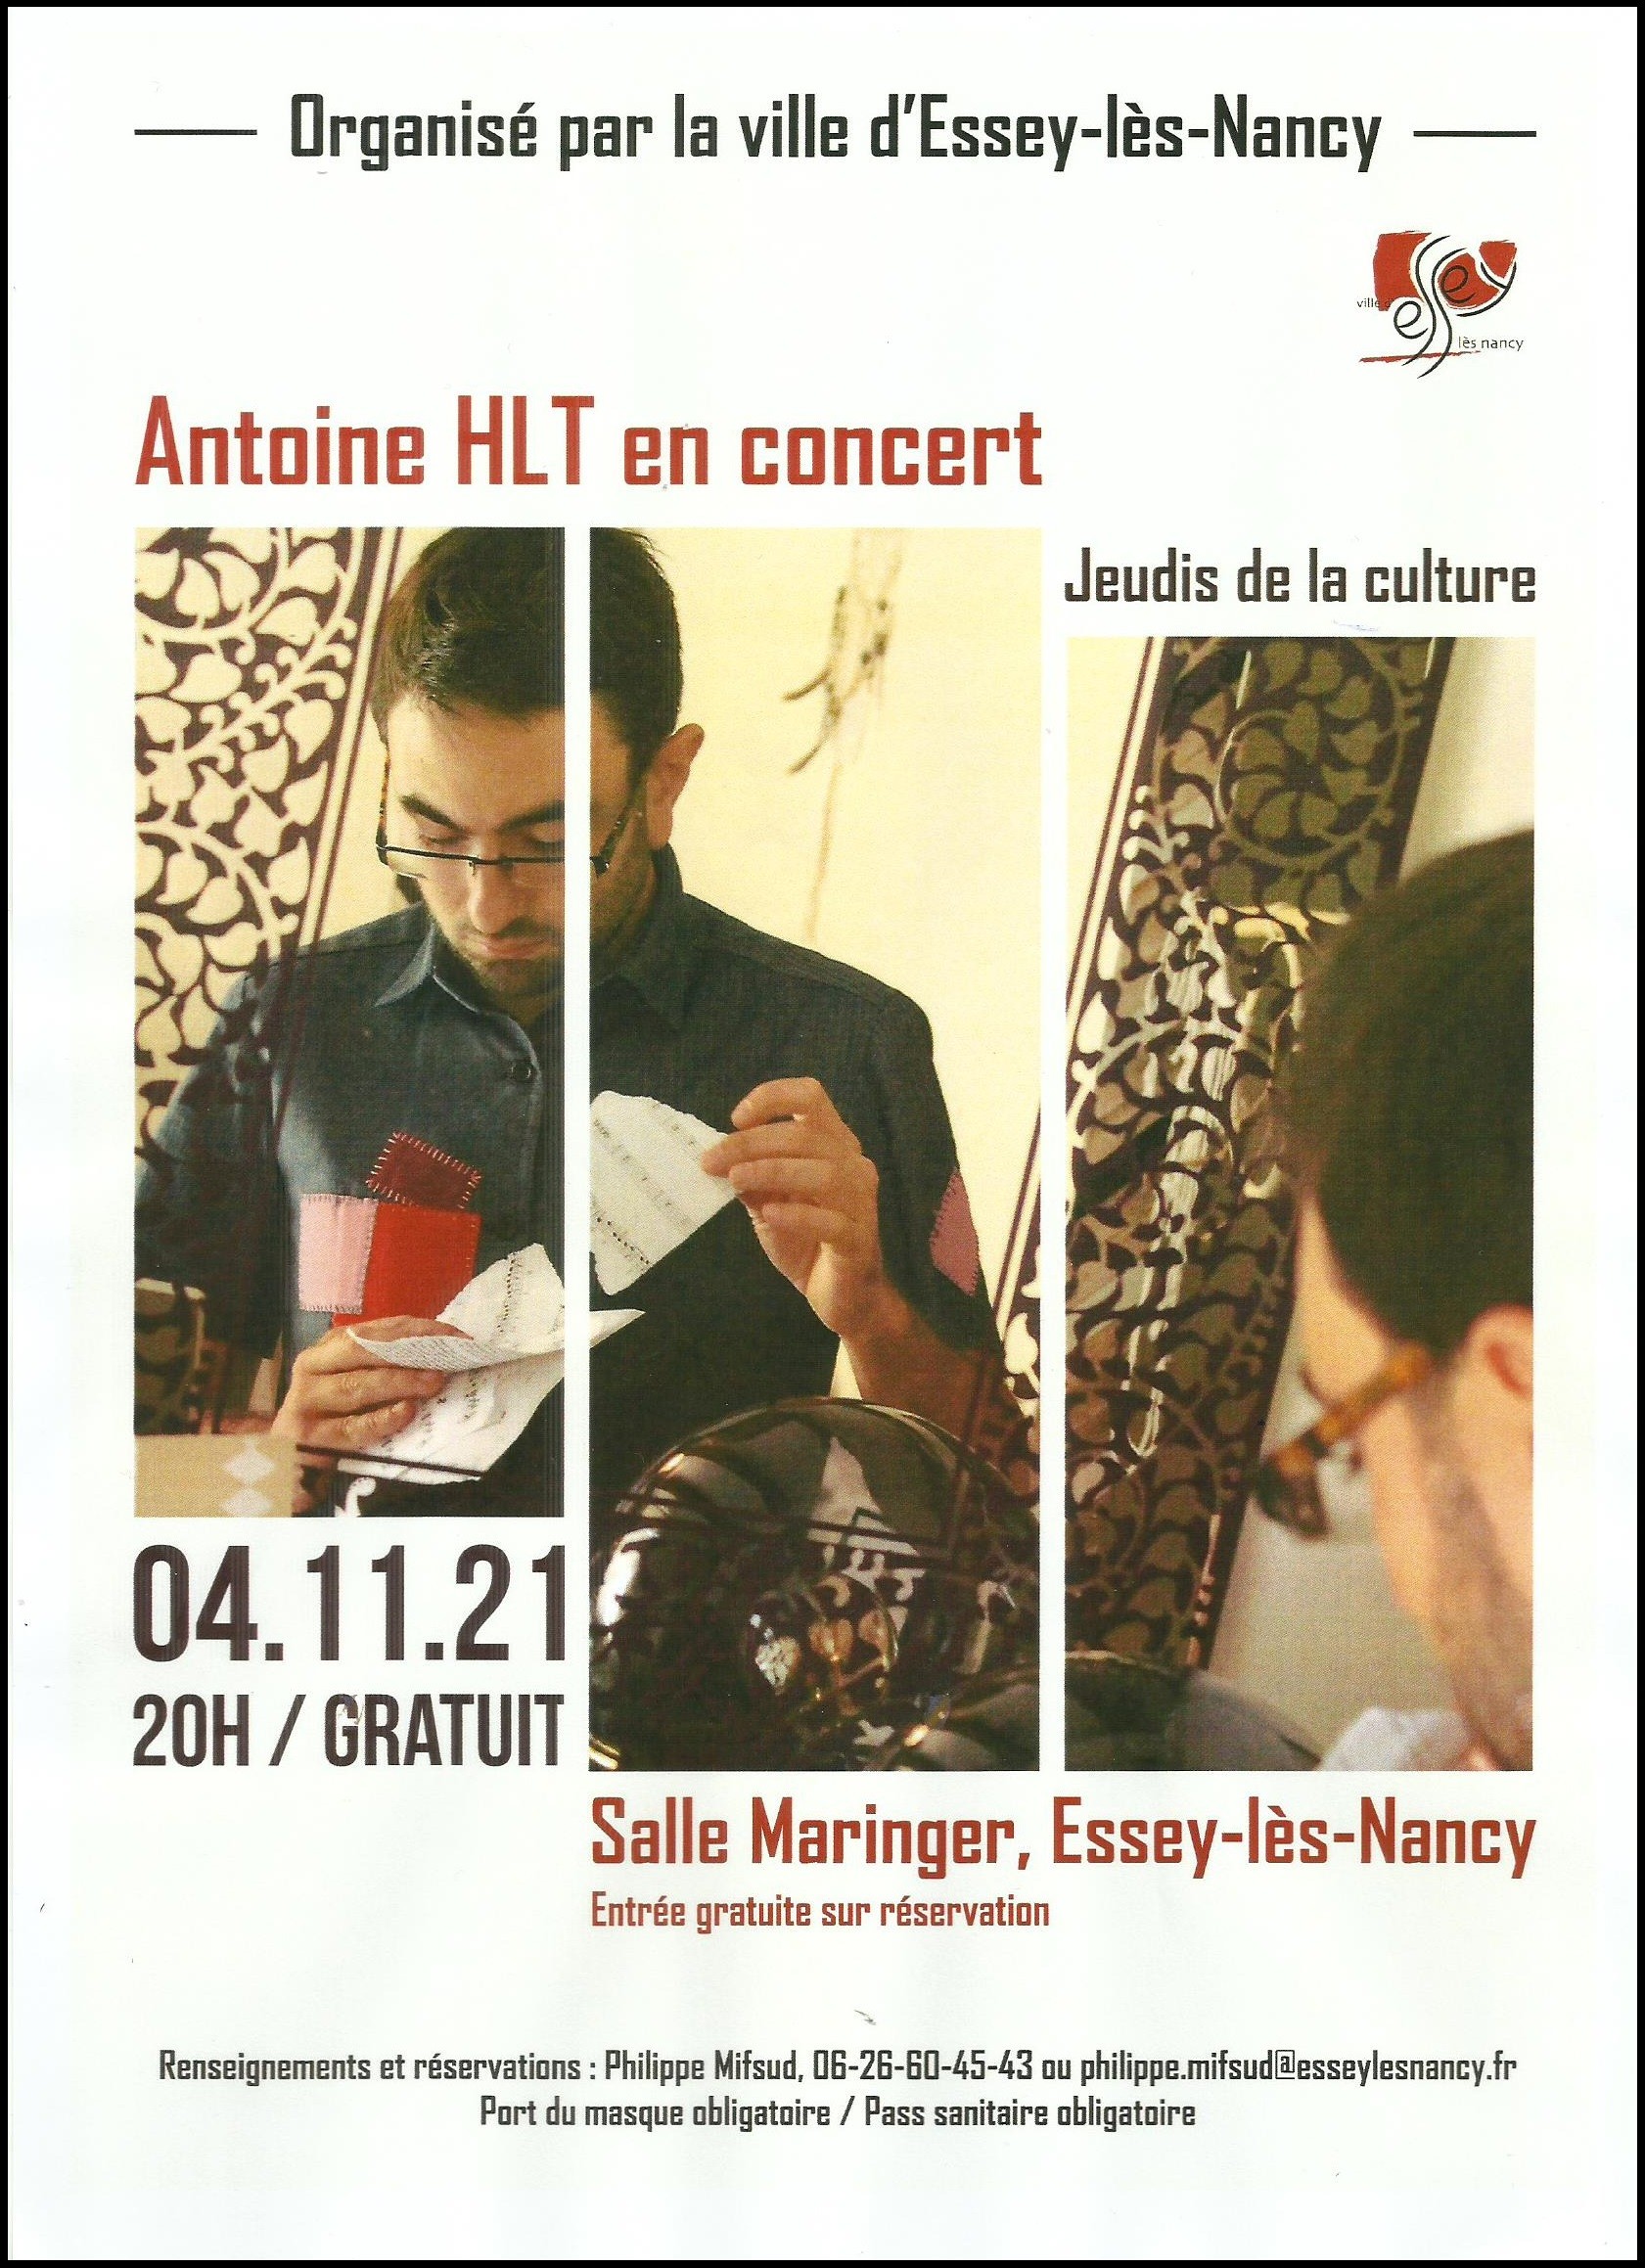 Antoine HLT en concert - Salle Maringer à Essey-lès-Nancy - 4 novembre 2021